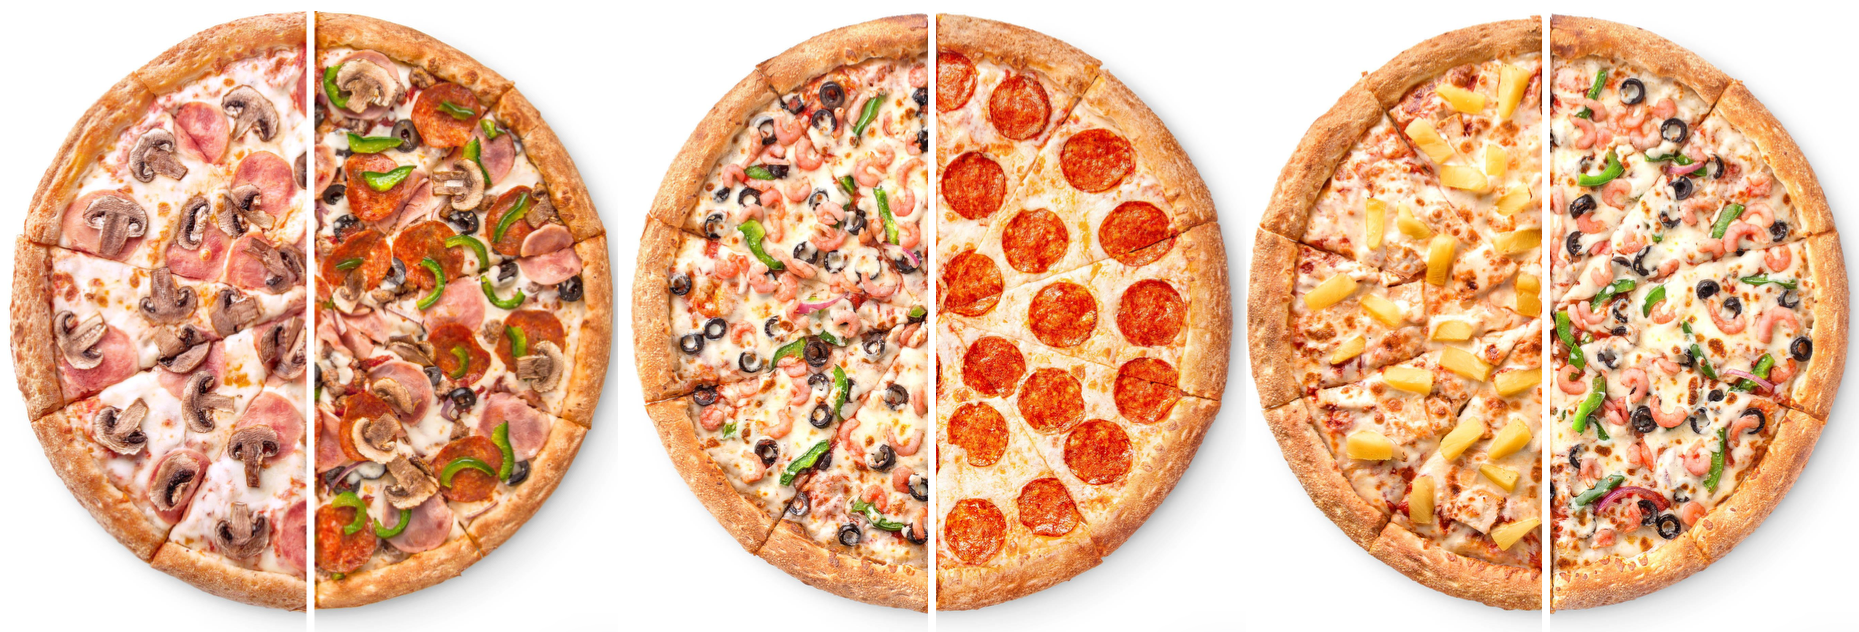 BYO:  - Half & Half: 12" -  (Medium) Specialty Pizza